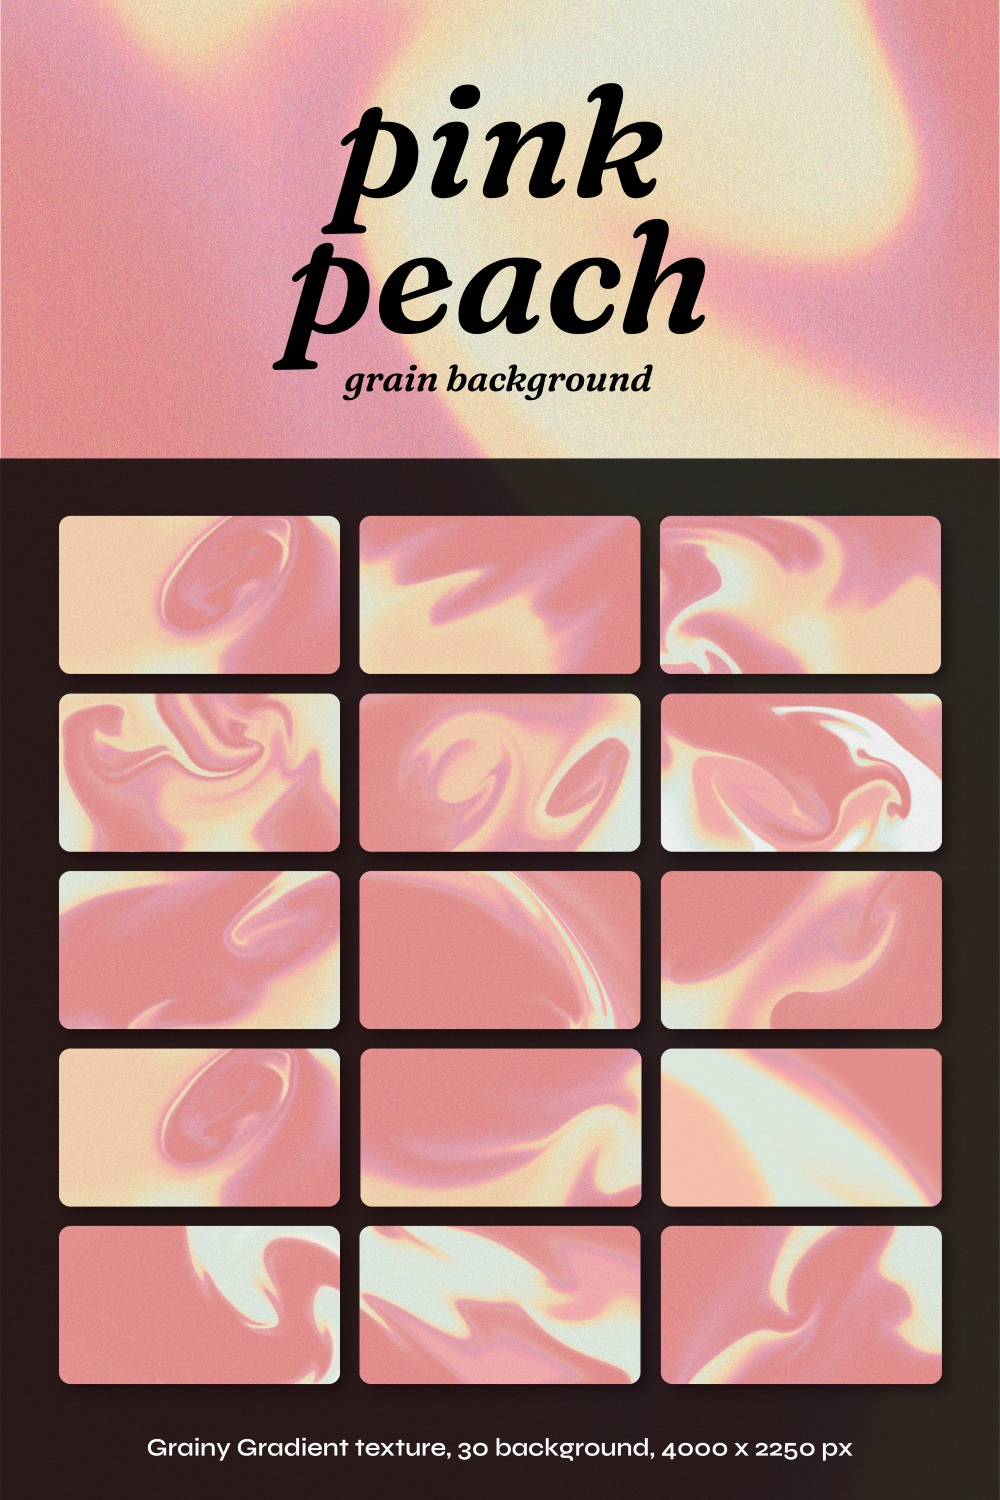 30 Pink peach grain texture background 4000x2250 pixel JPEG bundle set pinterest preview image.